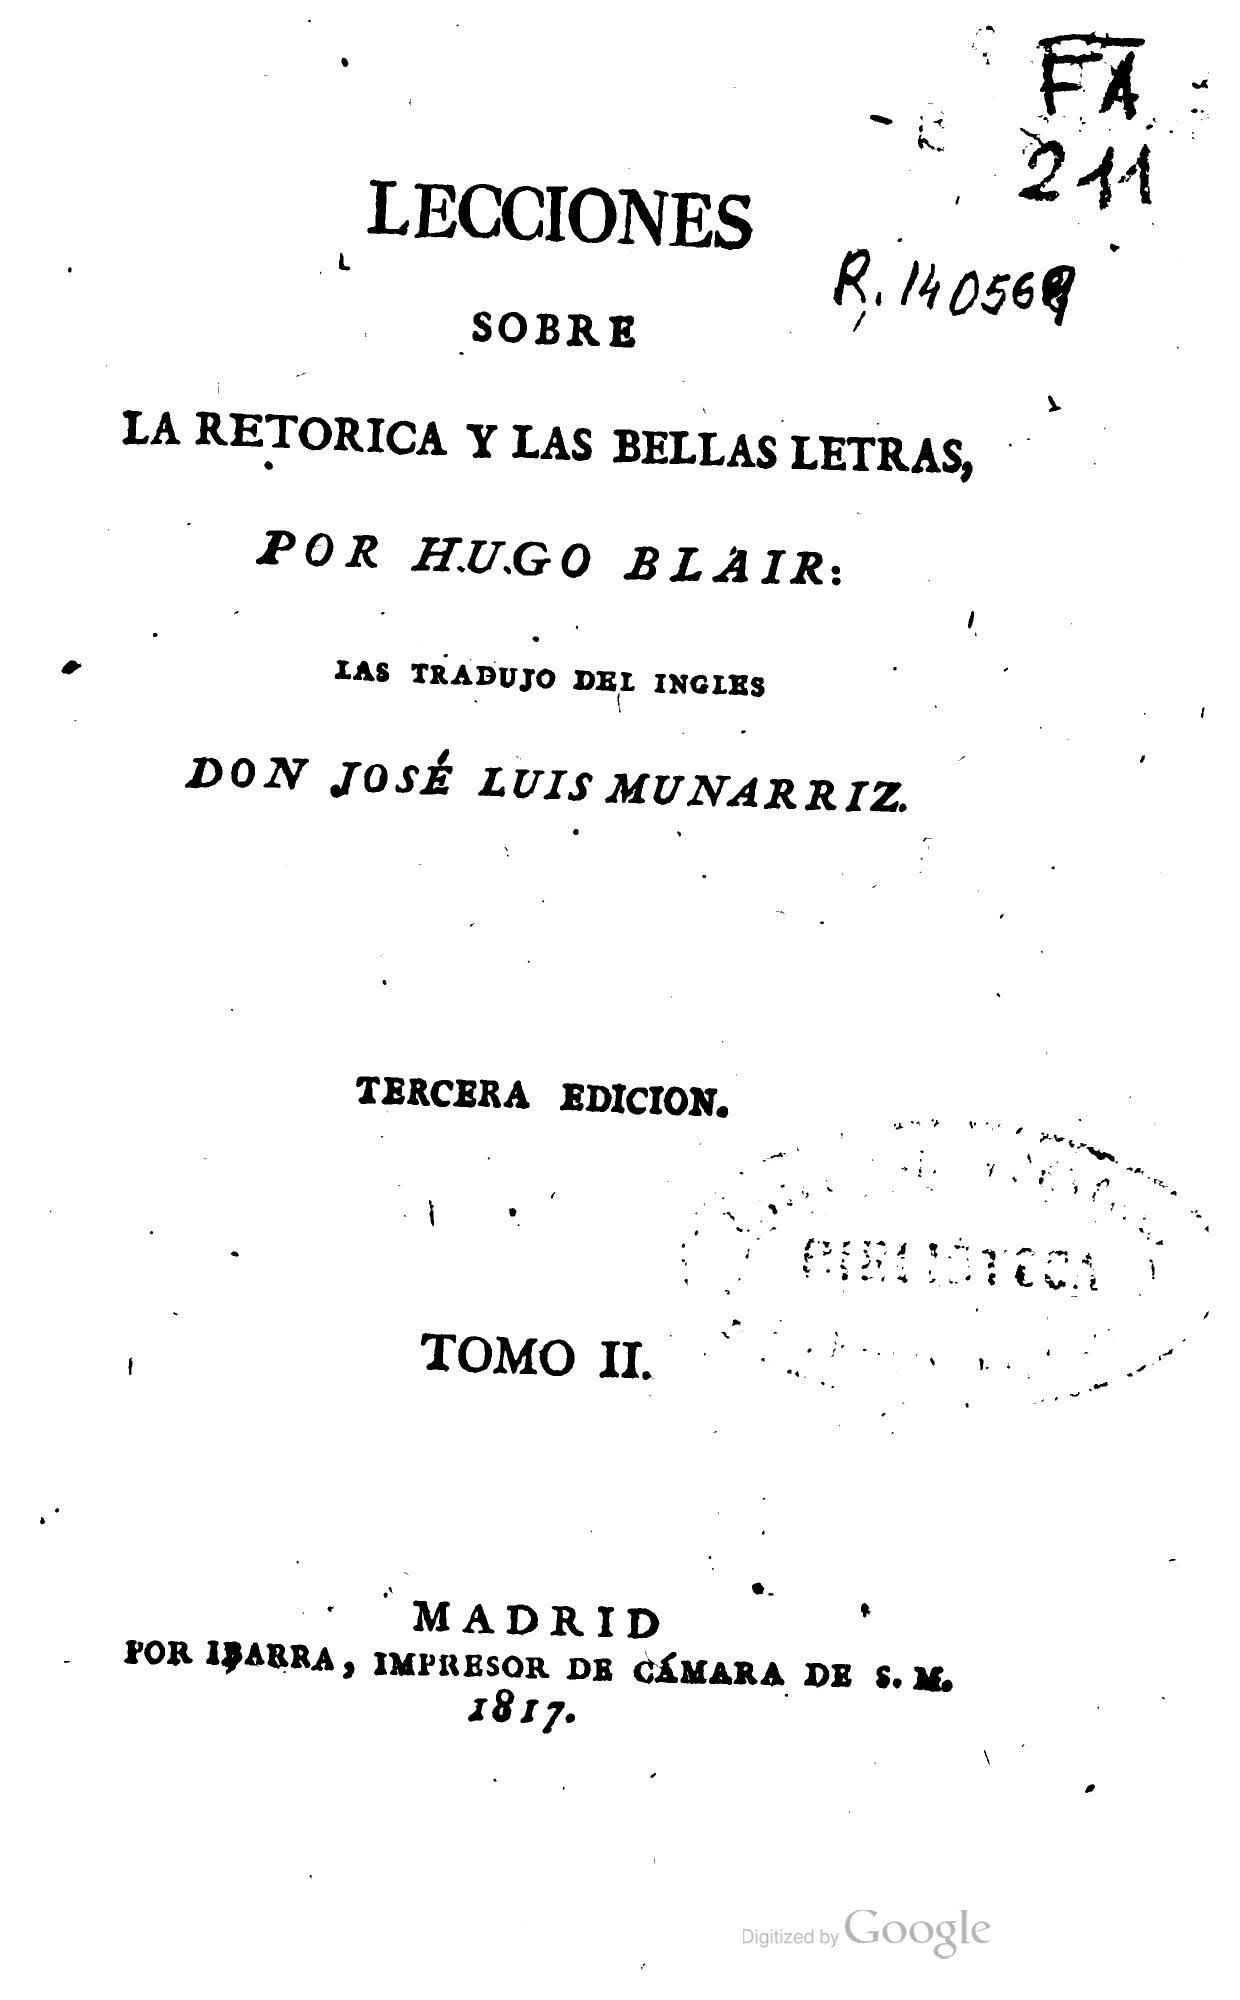 Lecciones sobre la Retórica y las Bellas Letras, Tomo II